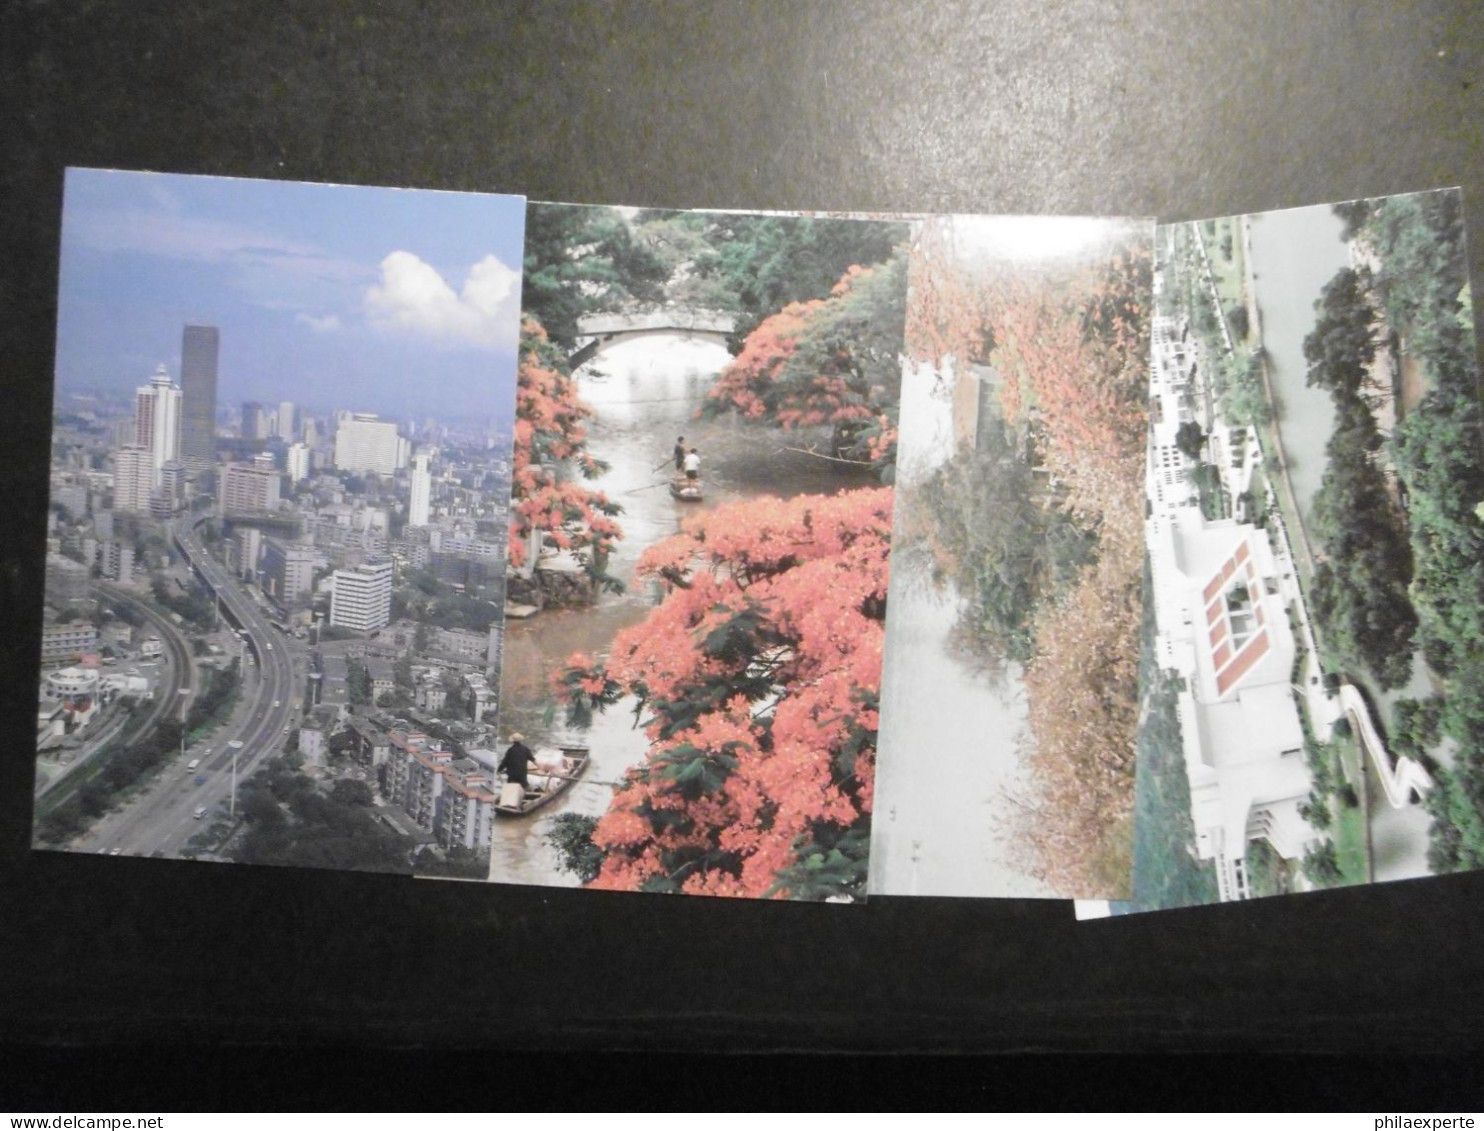 China VR 8 GA Karten Zu 15.- */ungebraucht Im Folder Von 1990 - Cartes Postales